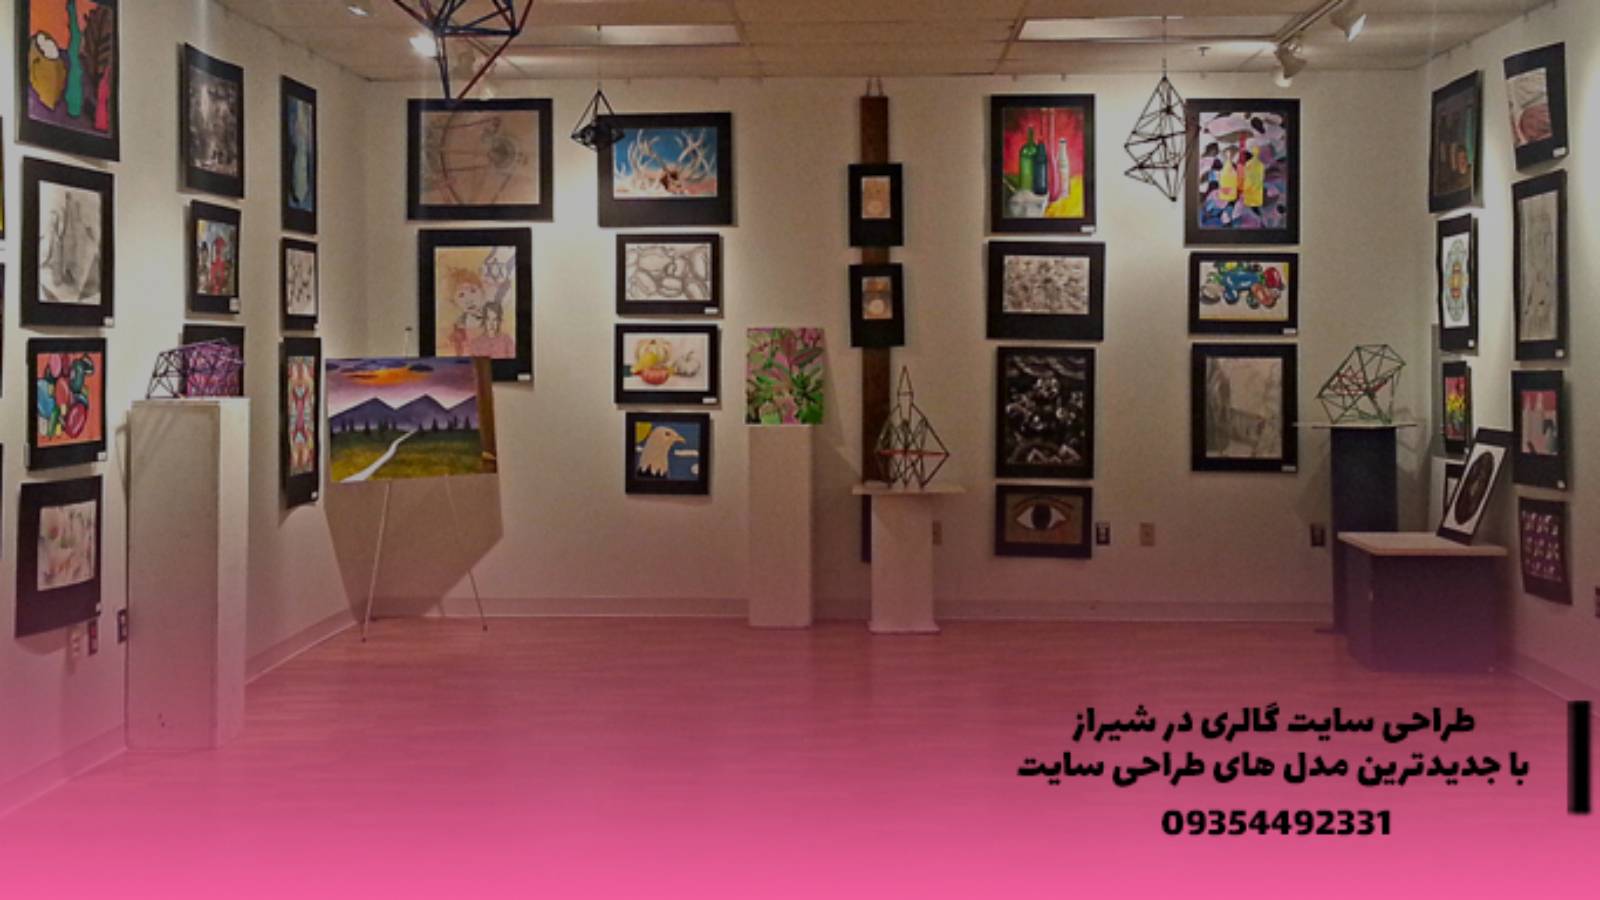 طراحی سایت گالری در شیراز